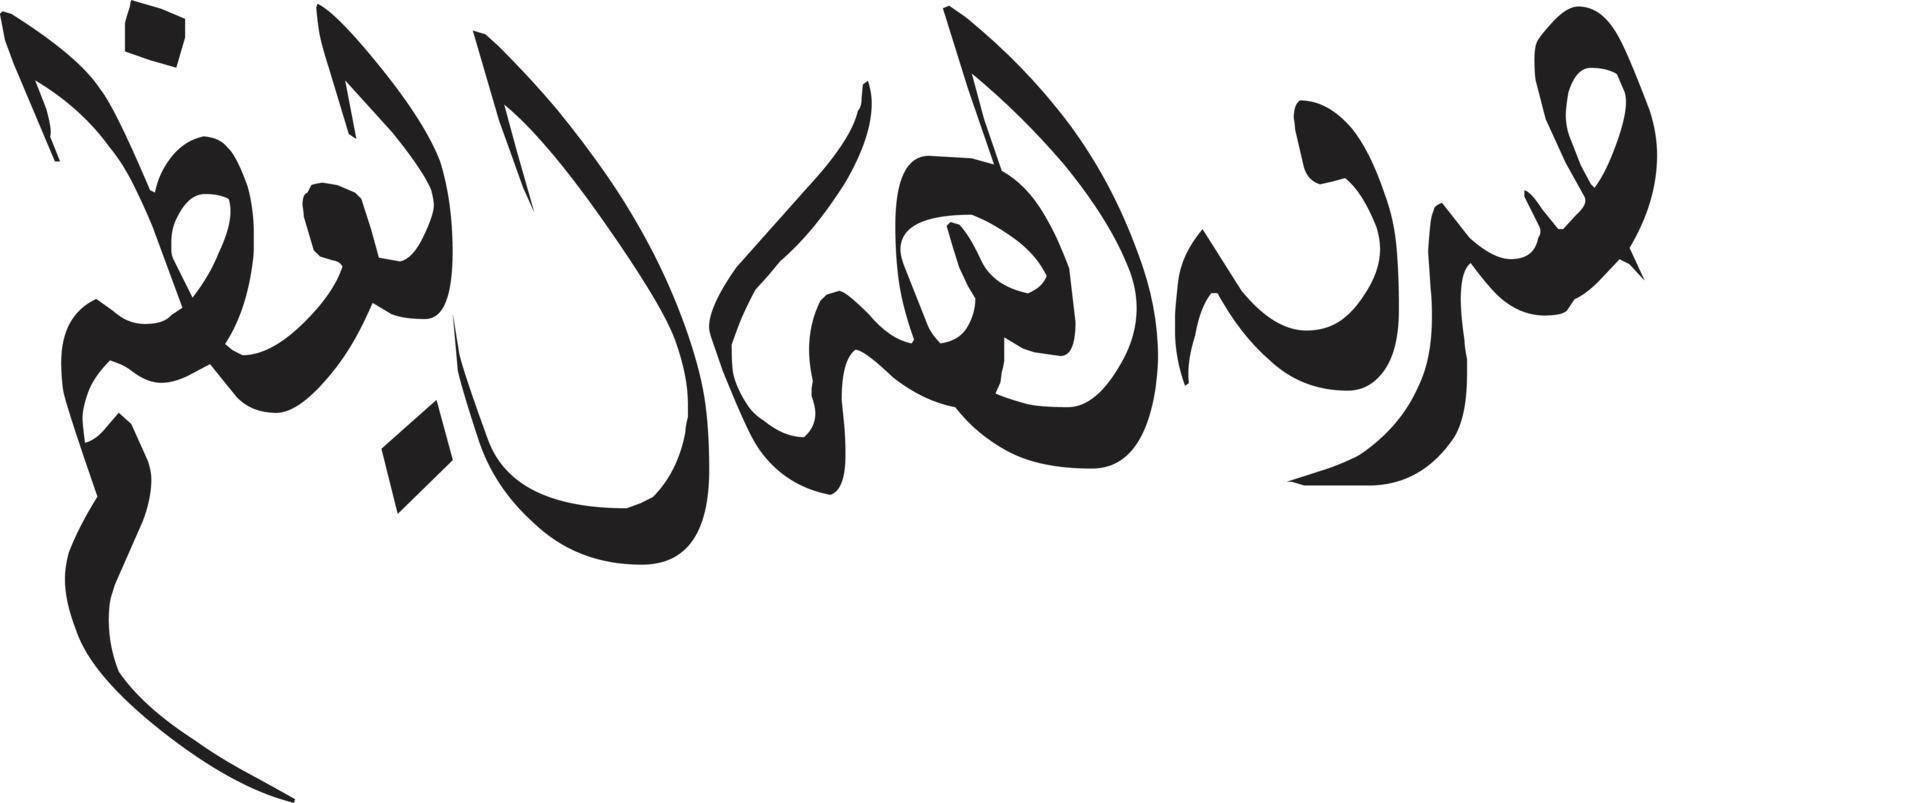 arbi título islámico urdu árabe caligrafía vector libre